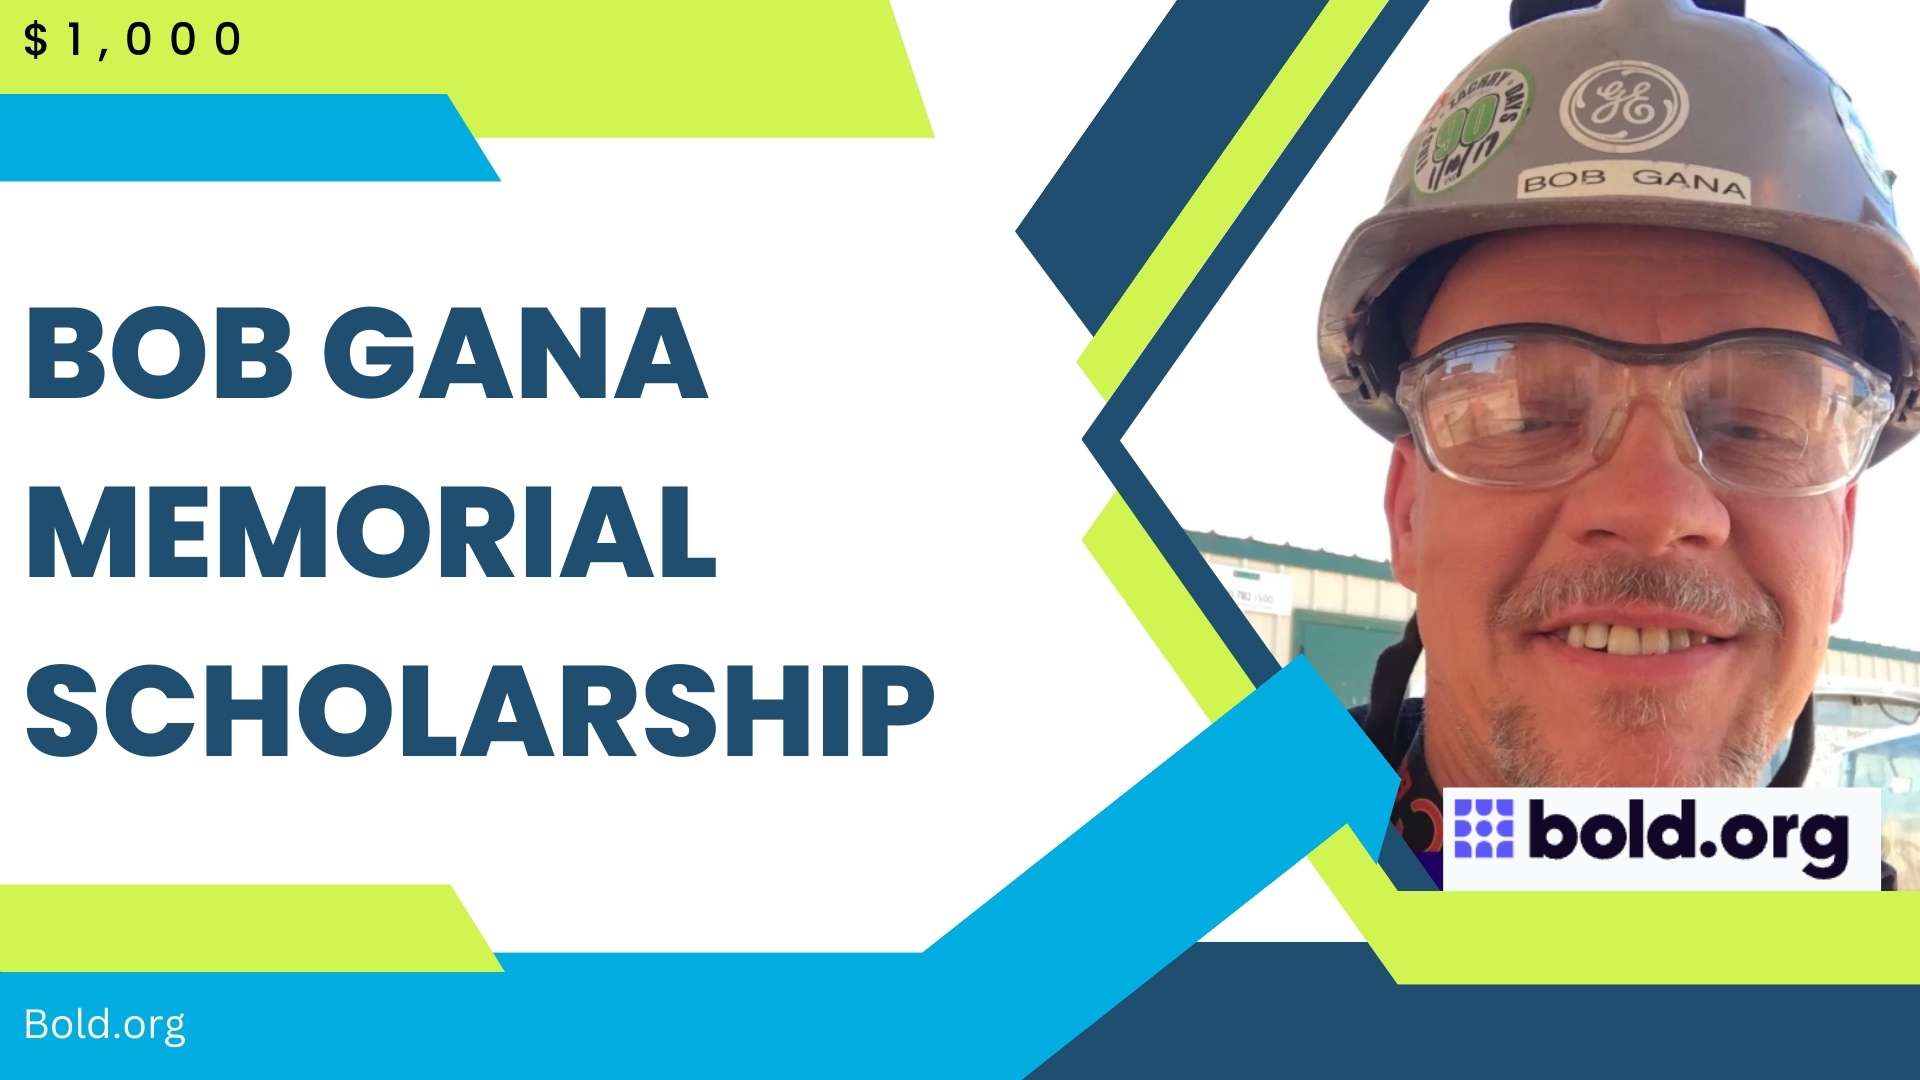 Bob Gana Memorial Scholarship